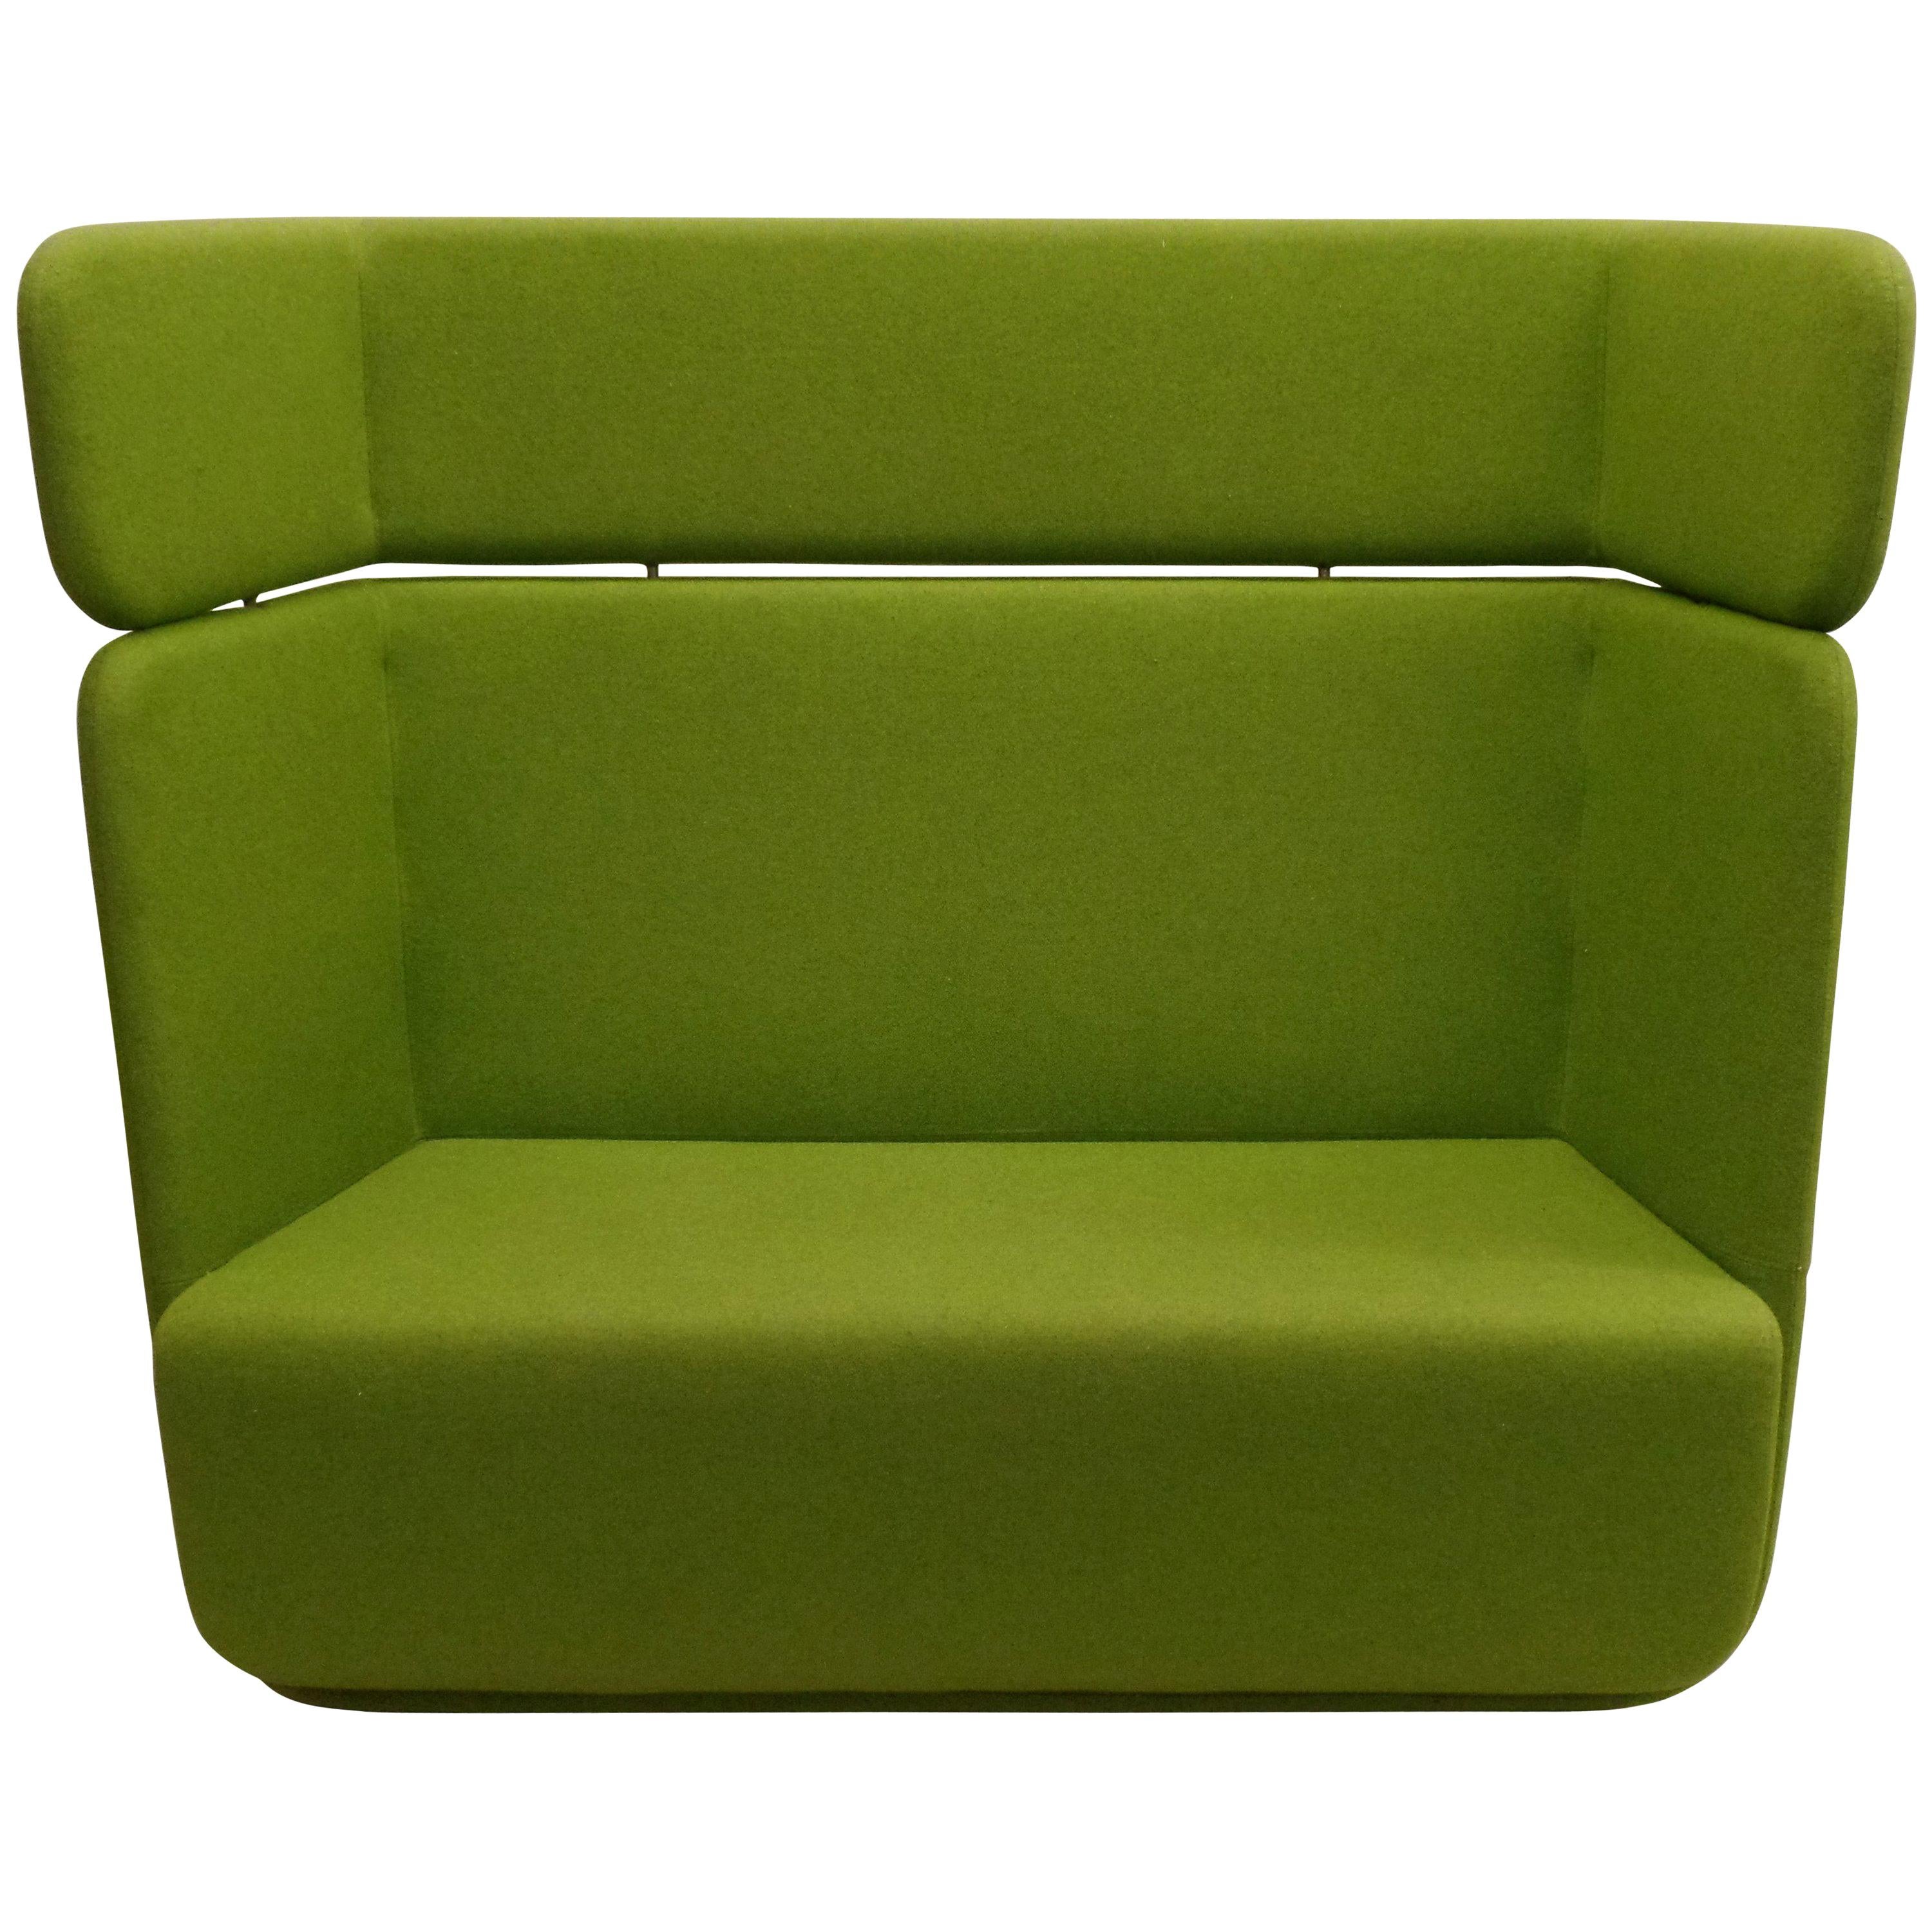 Skandinavisches Mossgrünes Sofa oder Sessel mit hoher Flügelrückenlehne, Mid-Century Modern